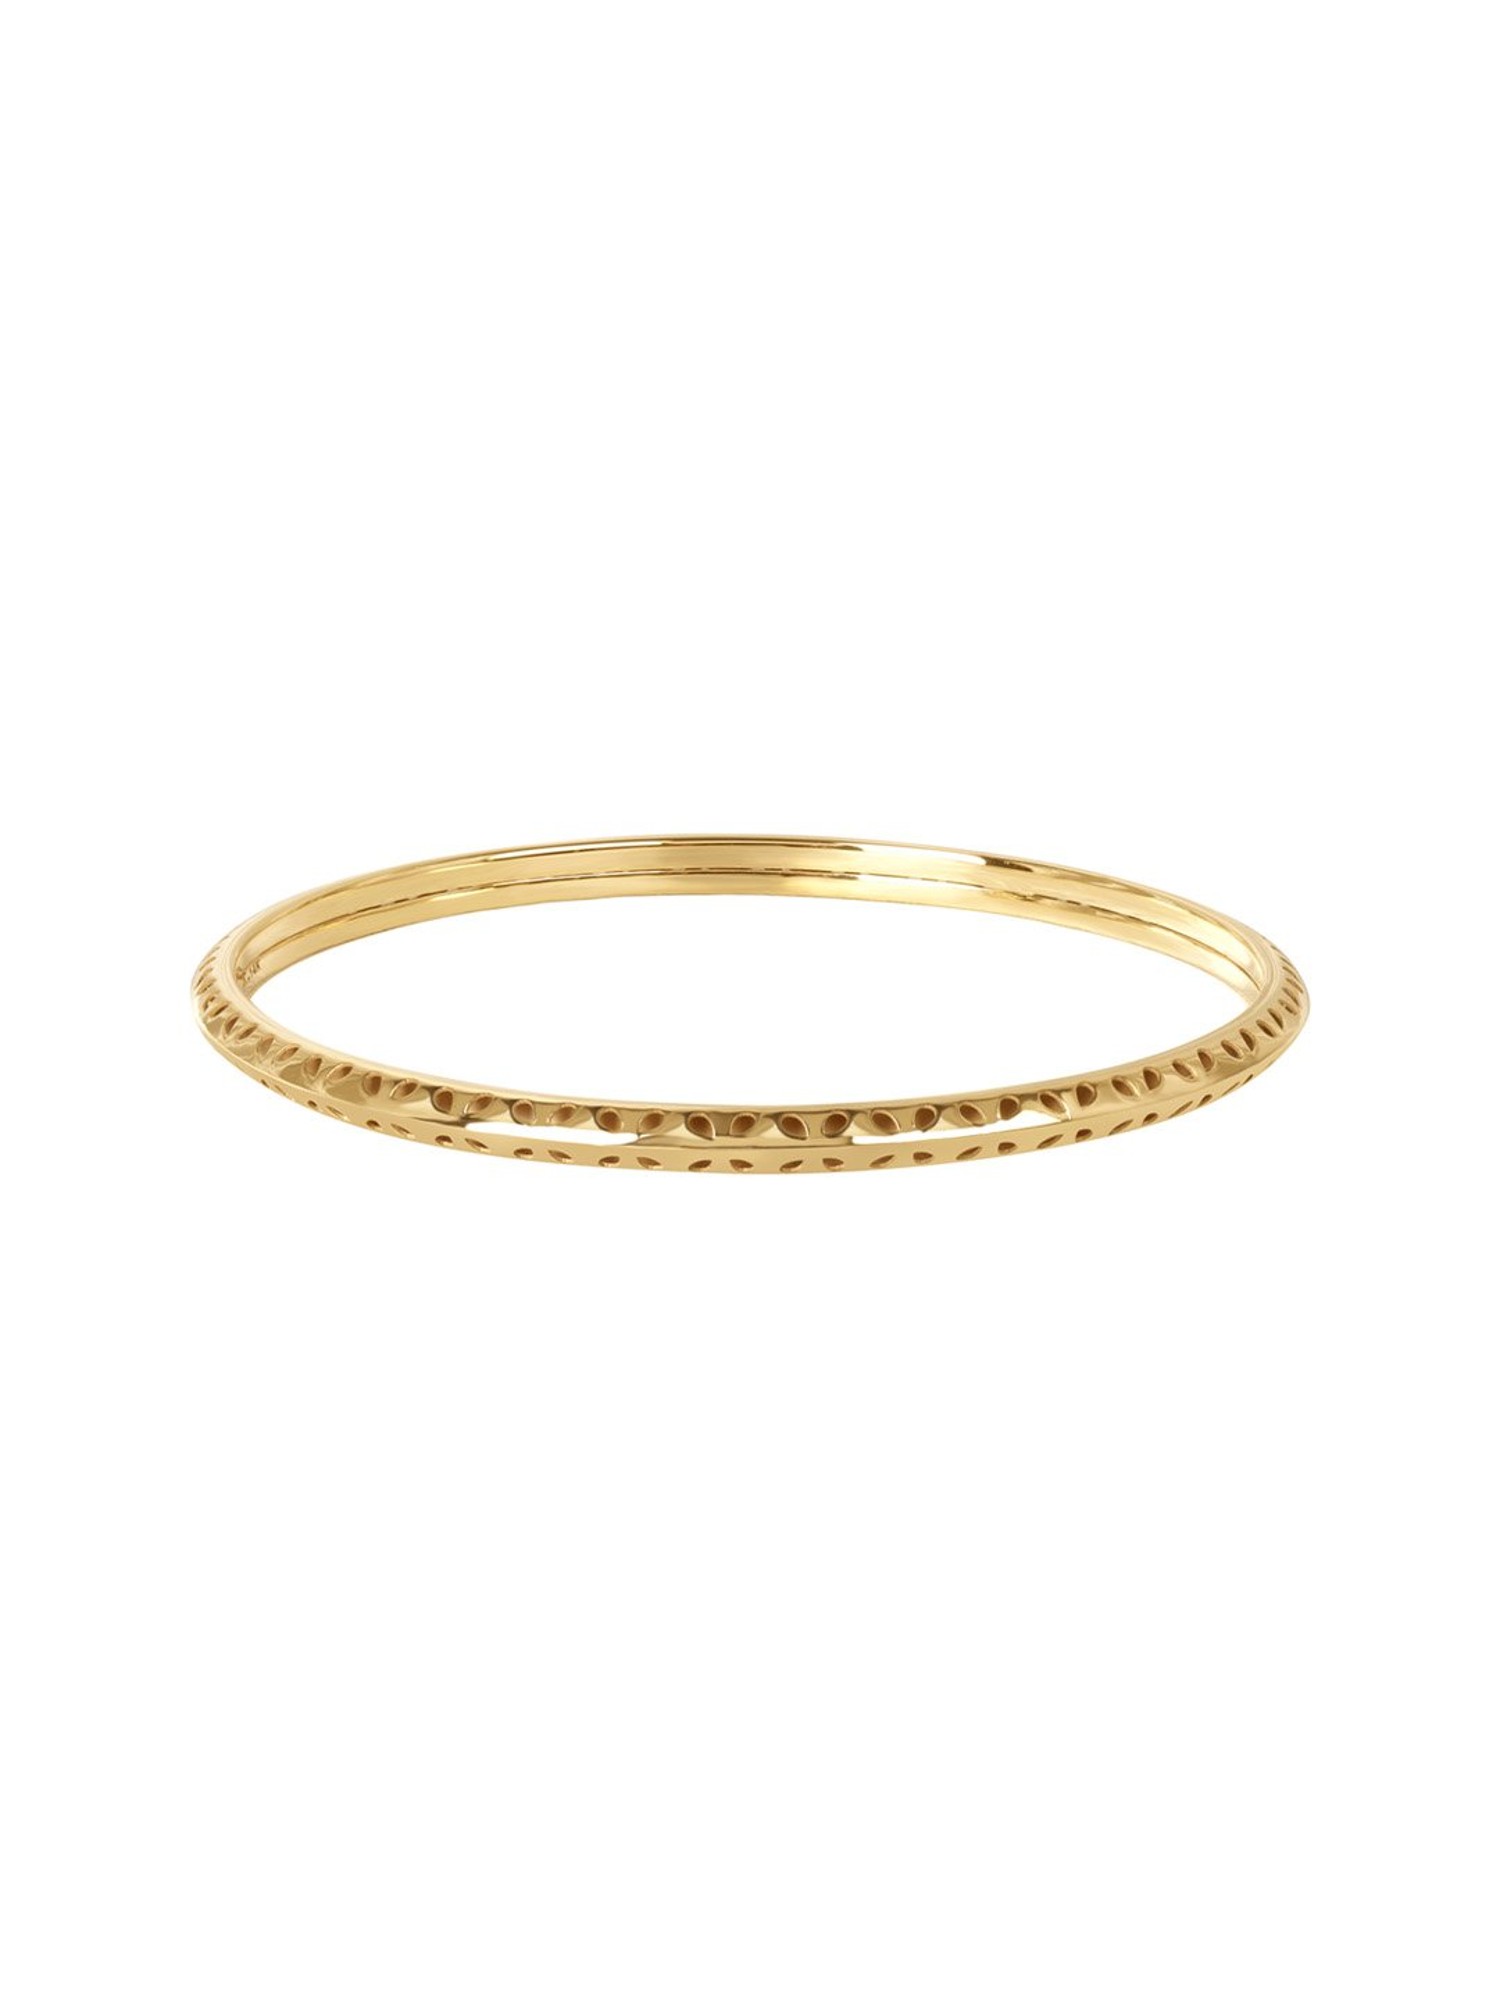 18K Gold Bangle Bracelet 175g